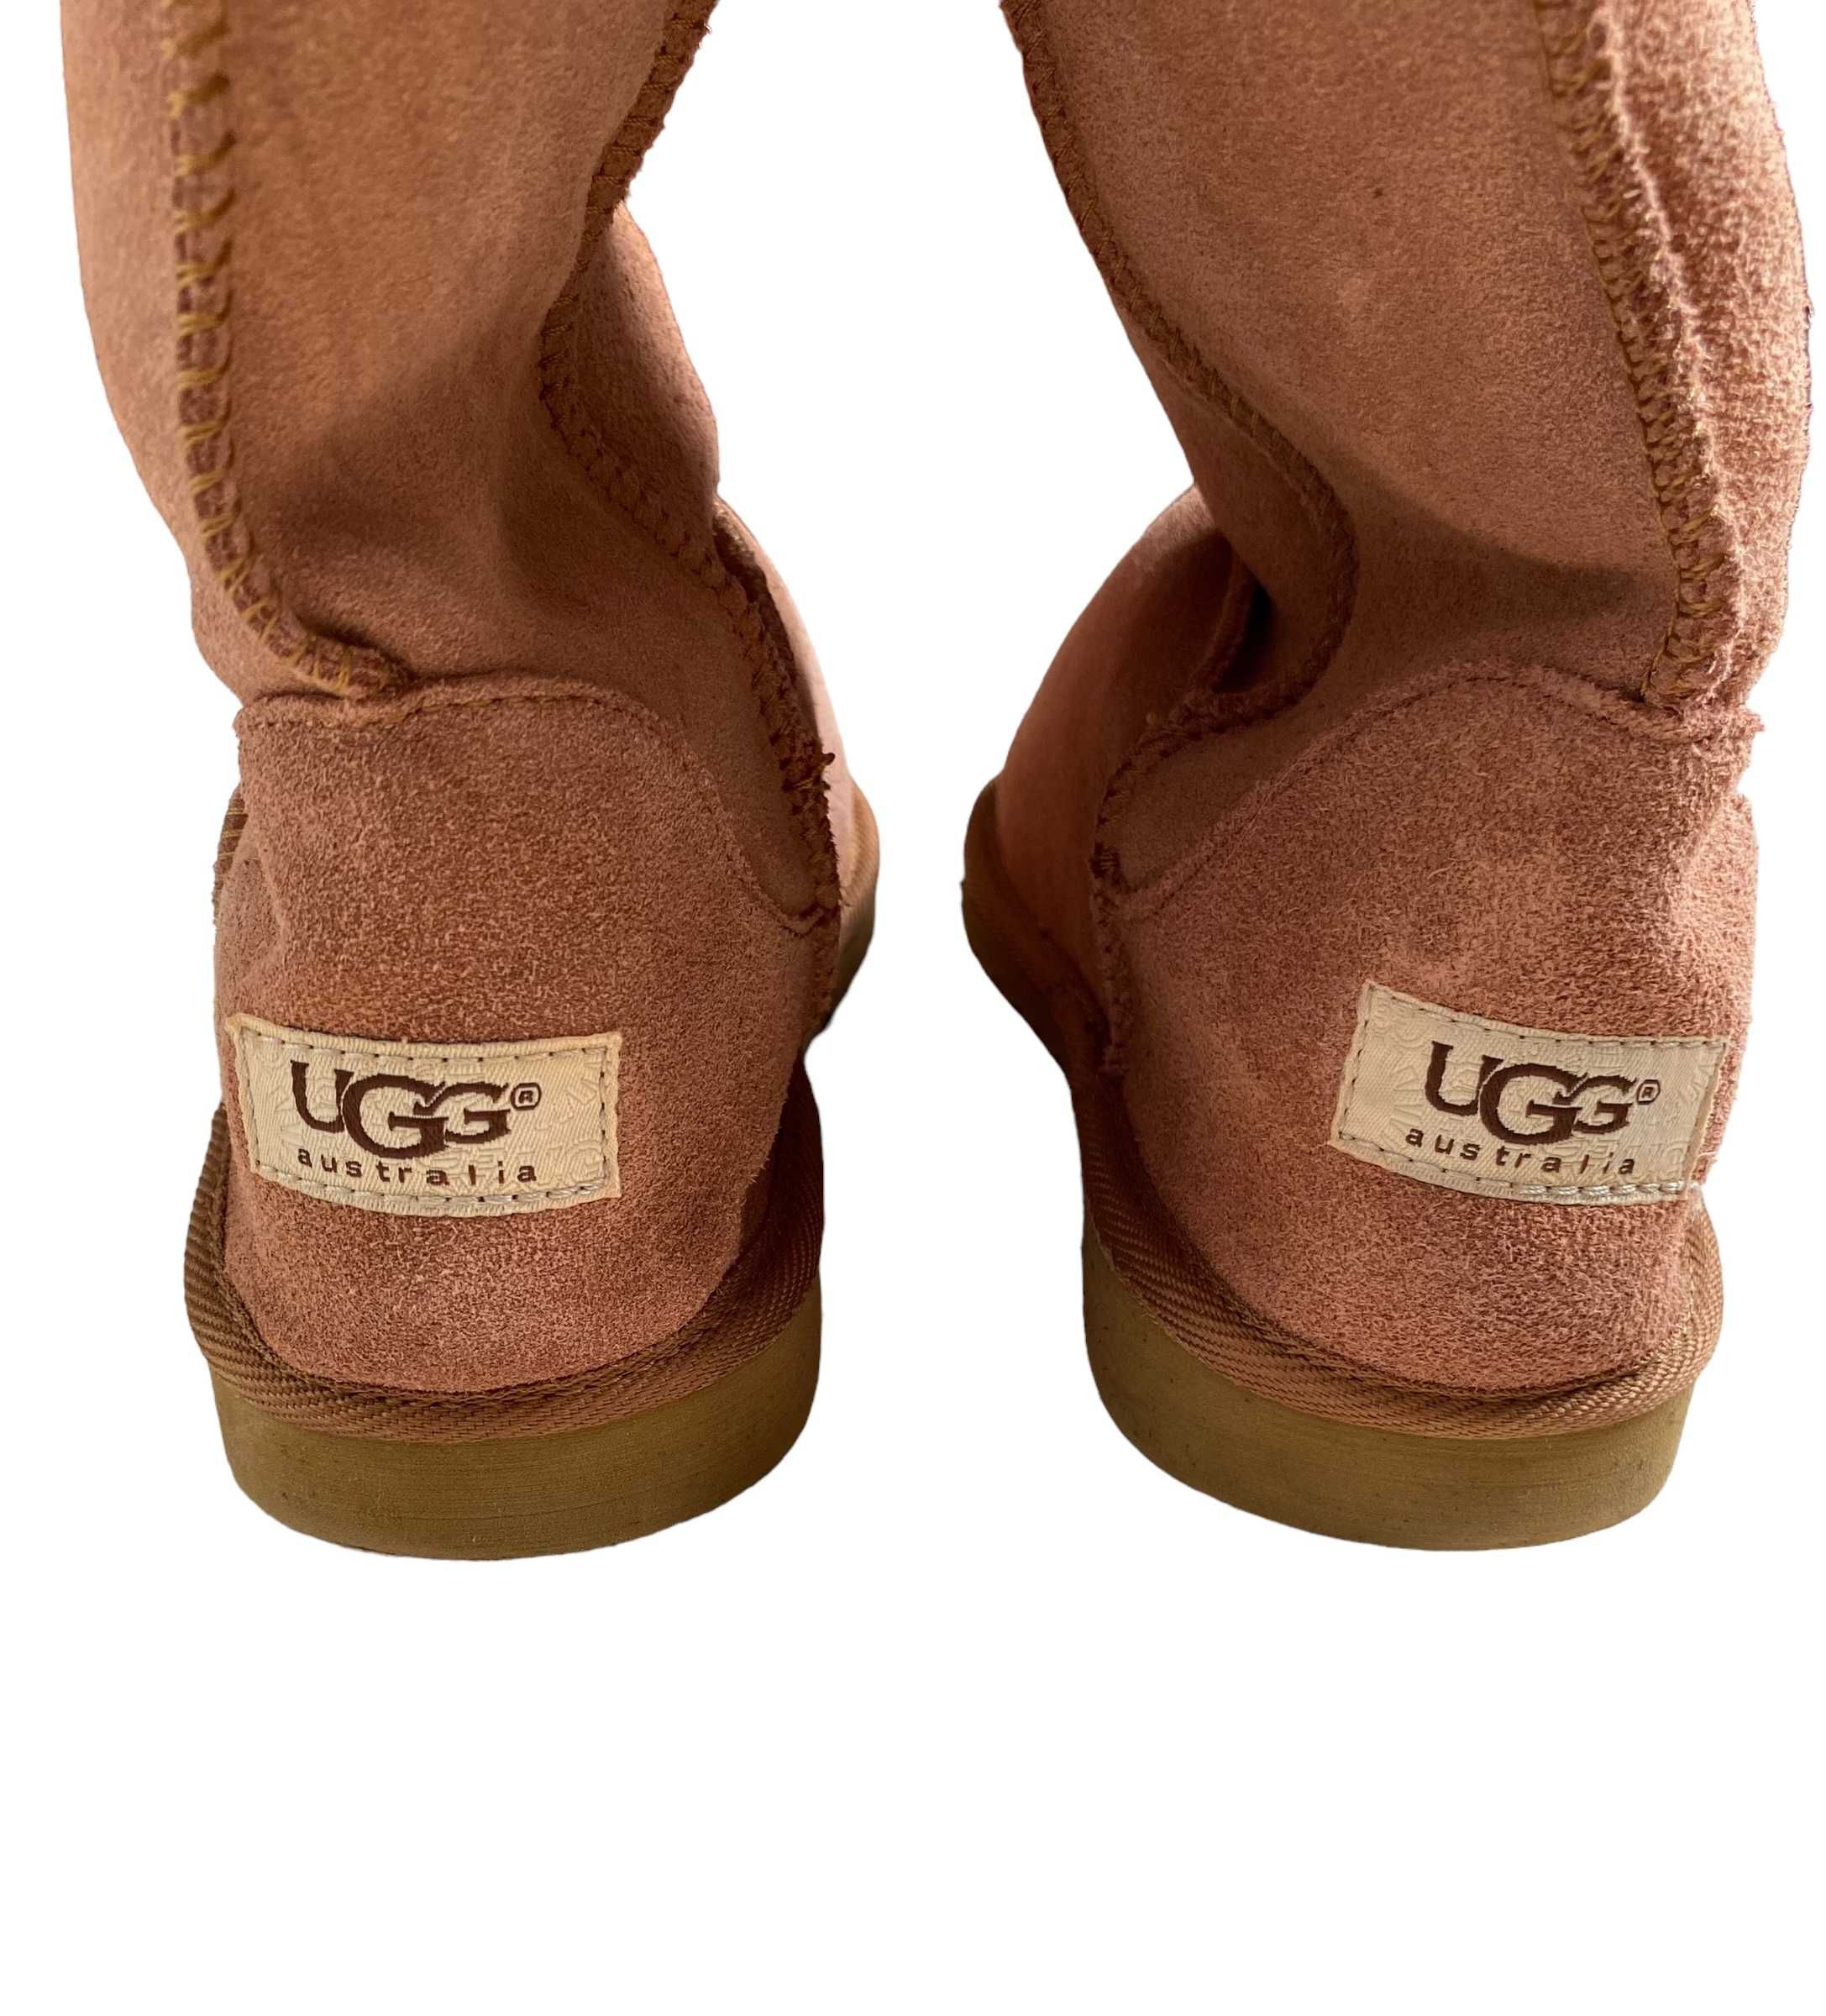 UGG brązowe buty wysokie, rozmiar 40, stan bardzo dobry